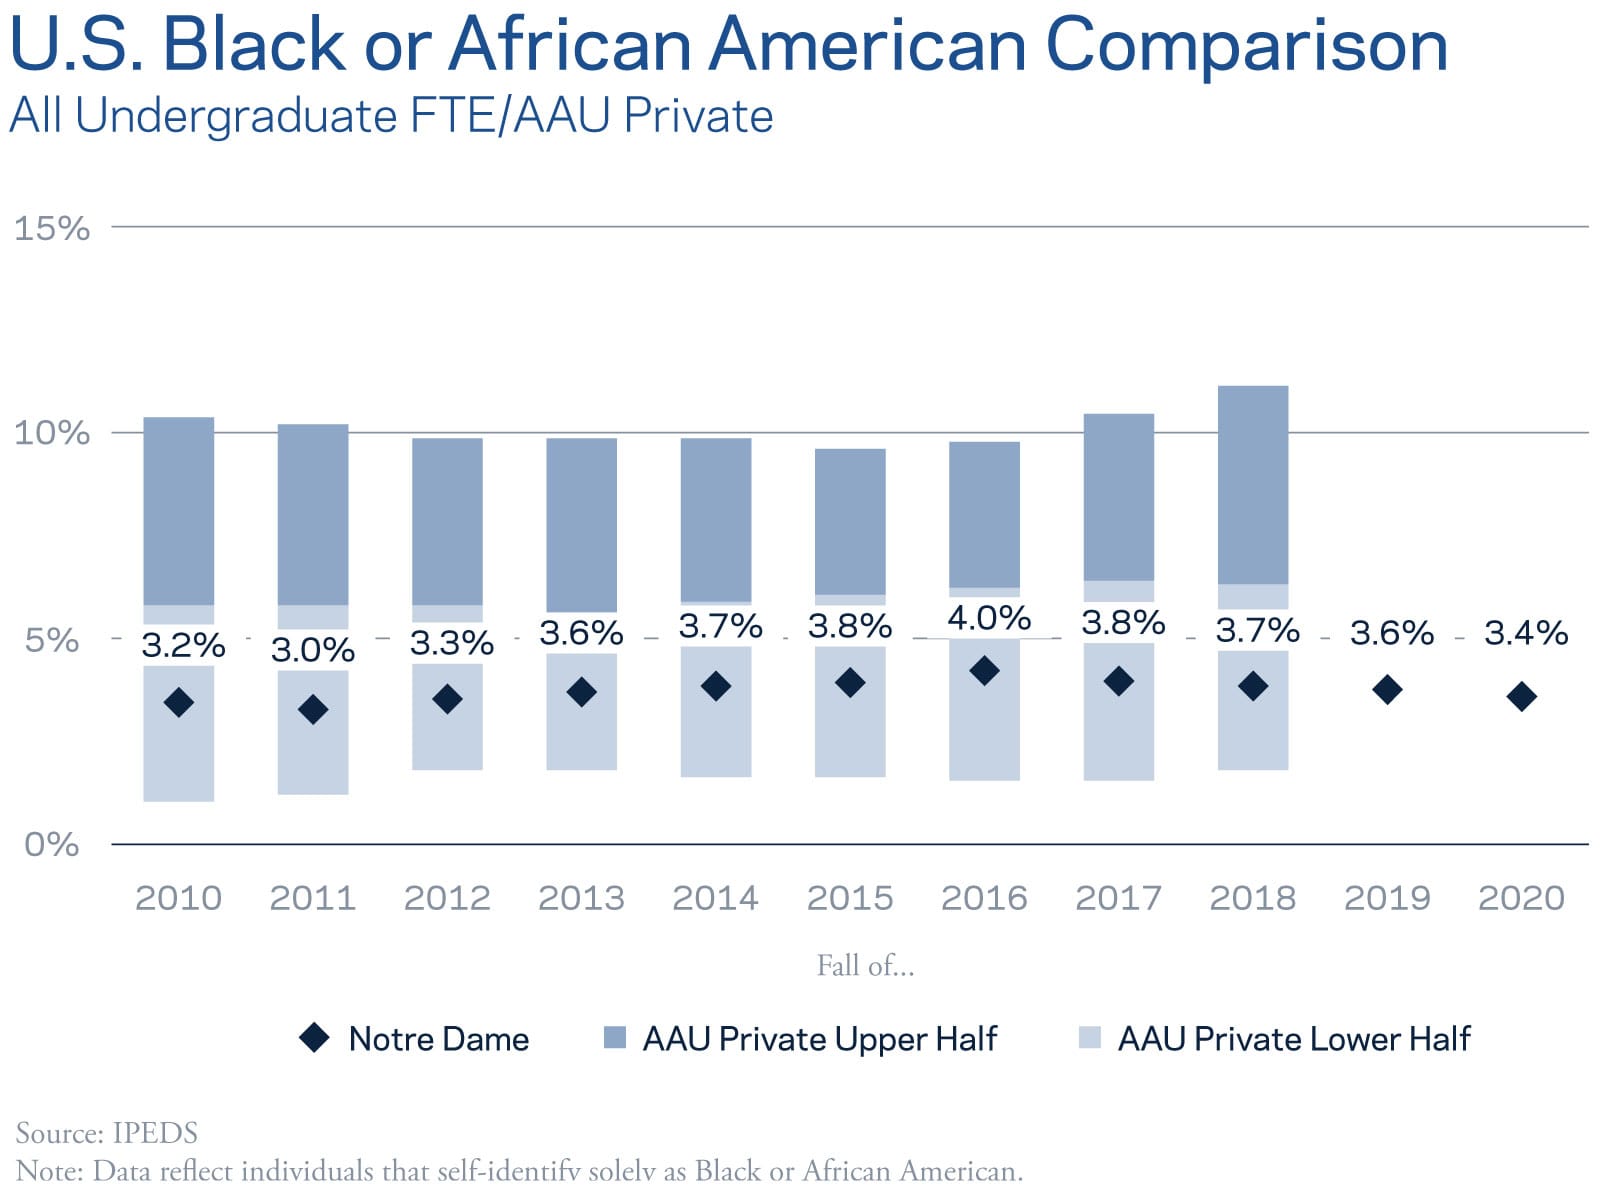 U.S. Black or African American Comparison - All Undergraduate FTE/AAU Private